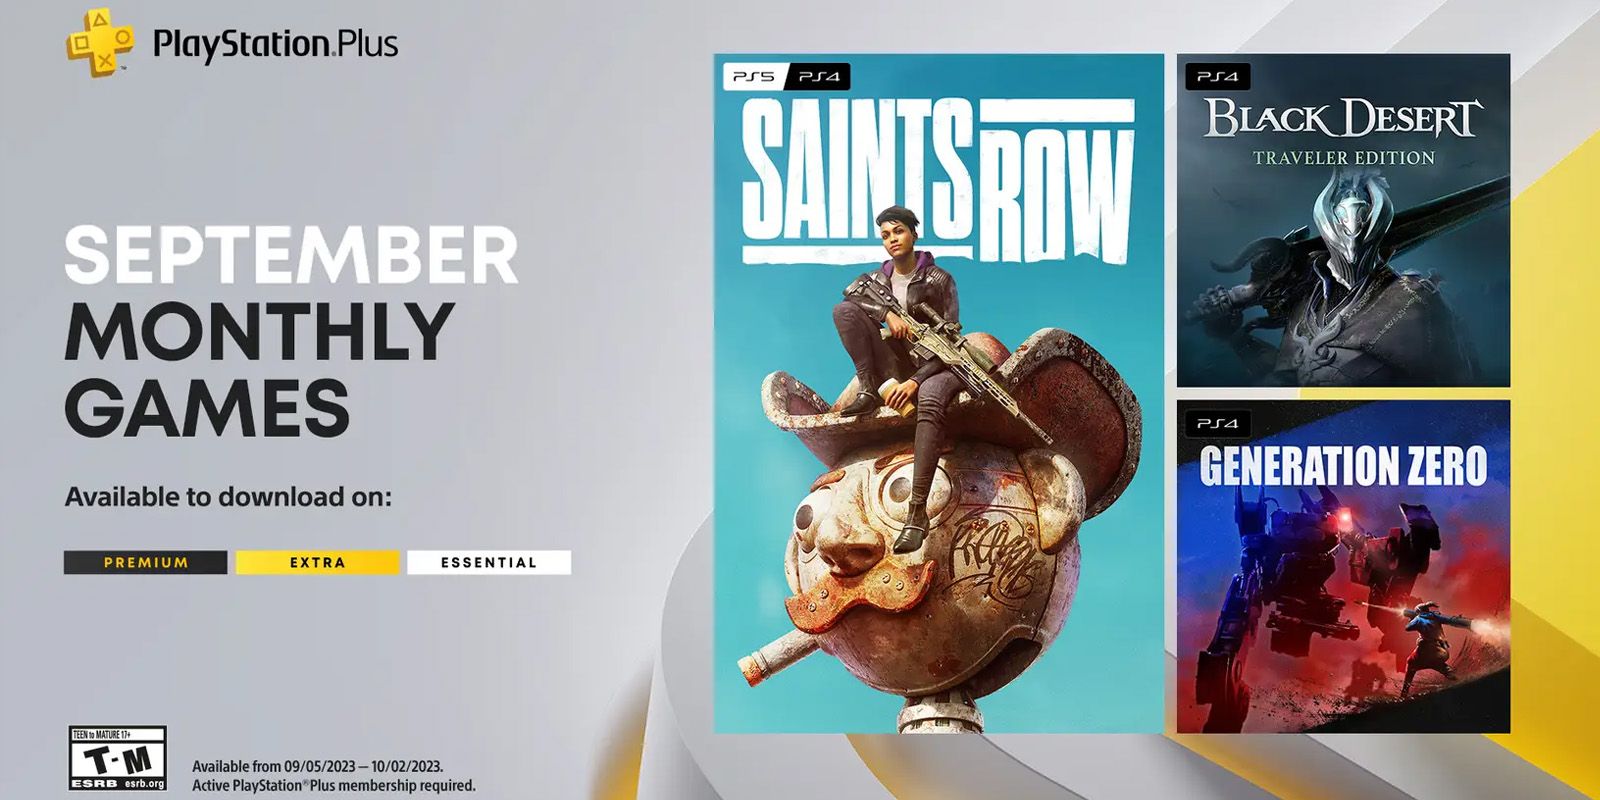 Vorschau auf die September-Spiele von PlayStation Plus mit Saints Row, Black Desert Traveller Edition und Generation Zero.